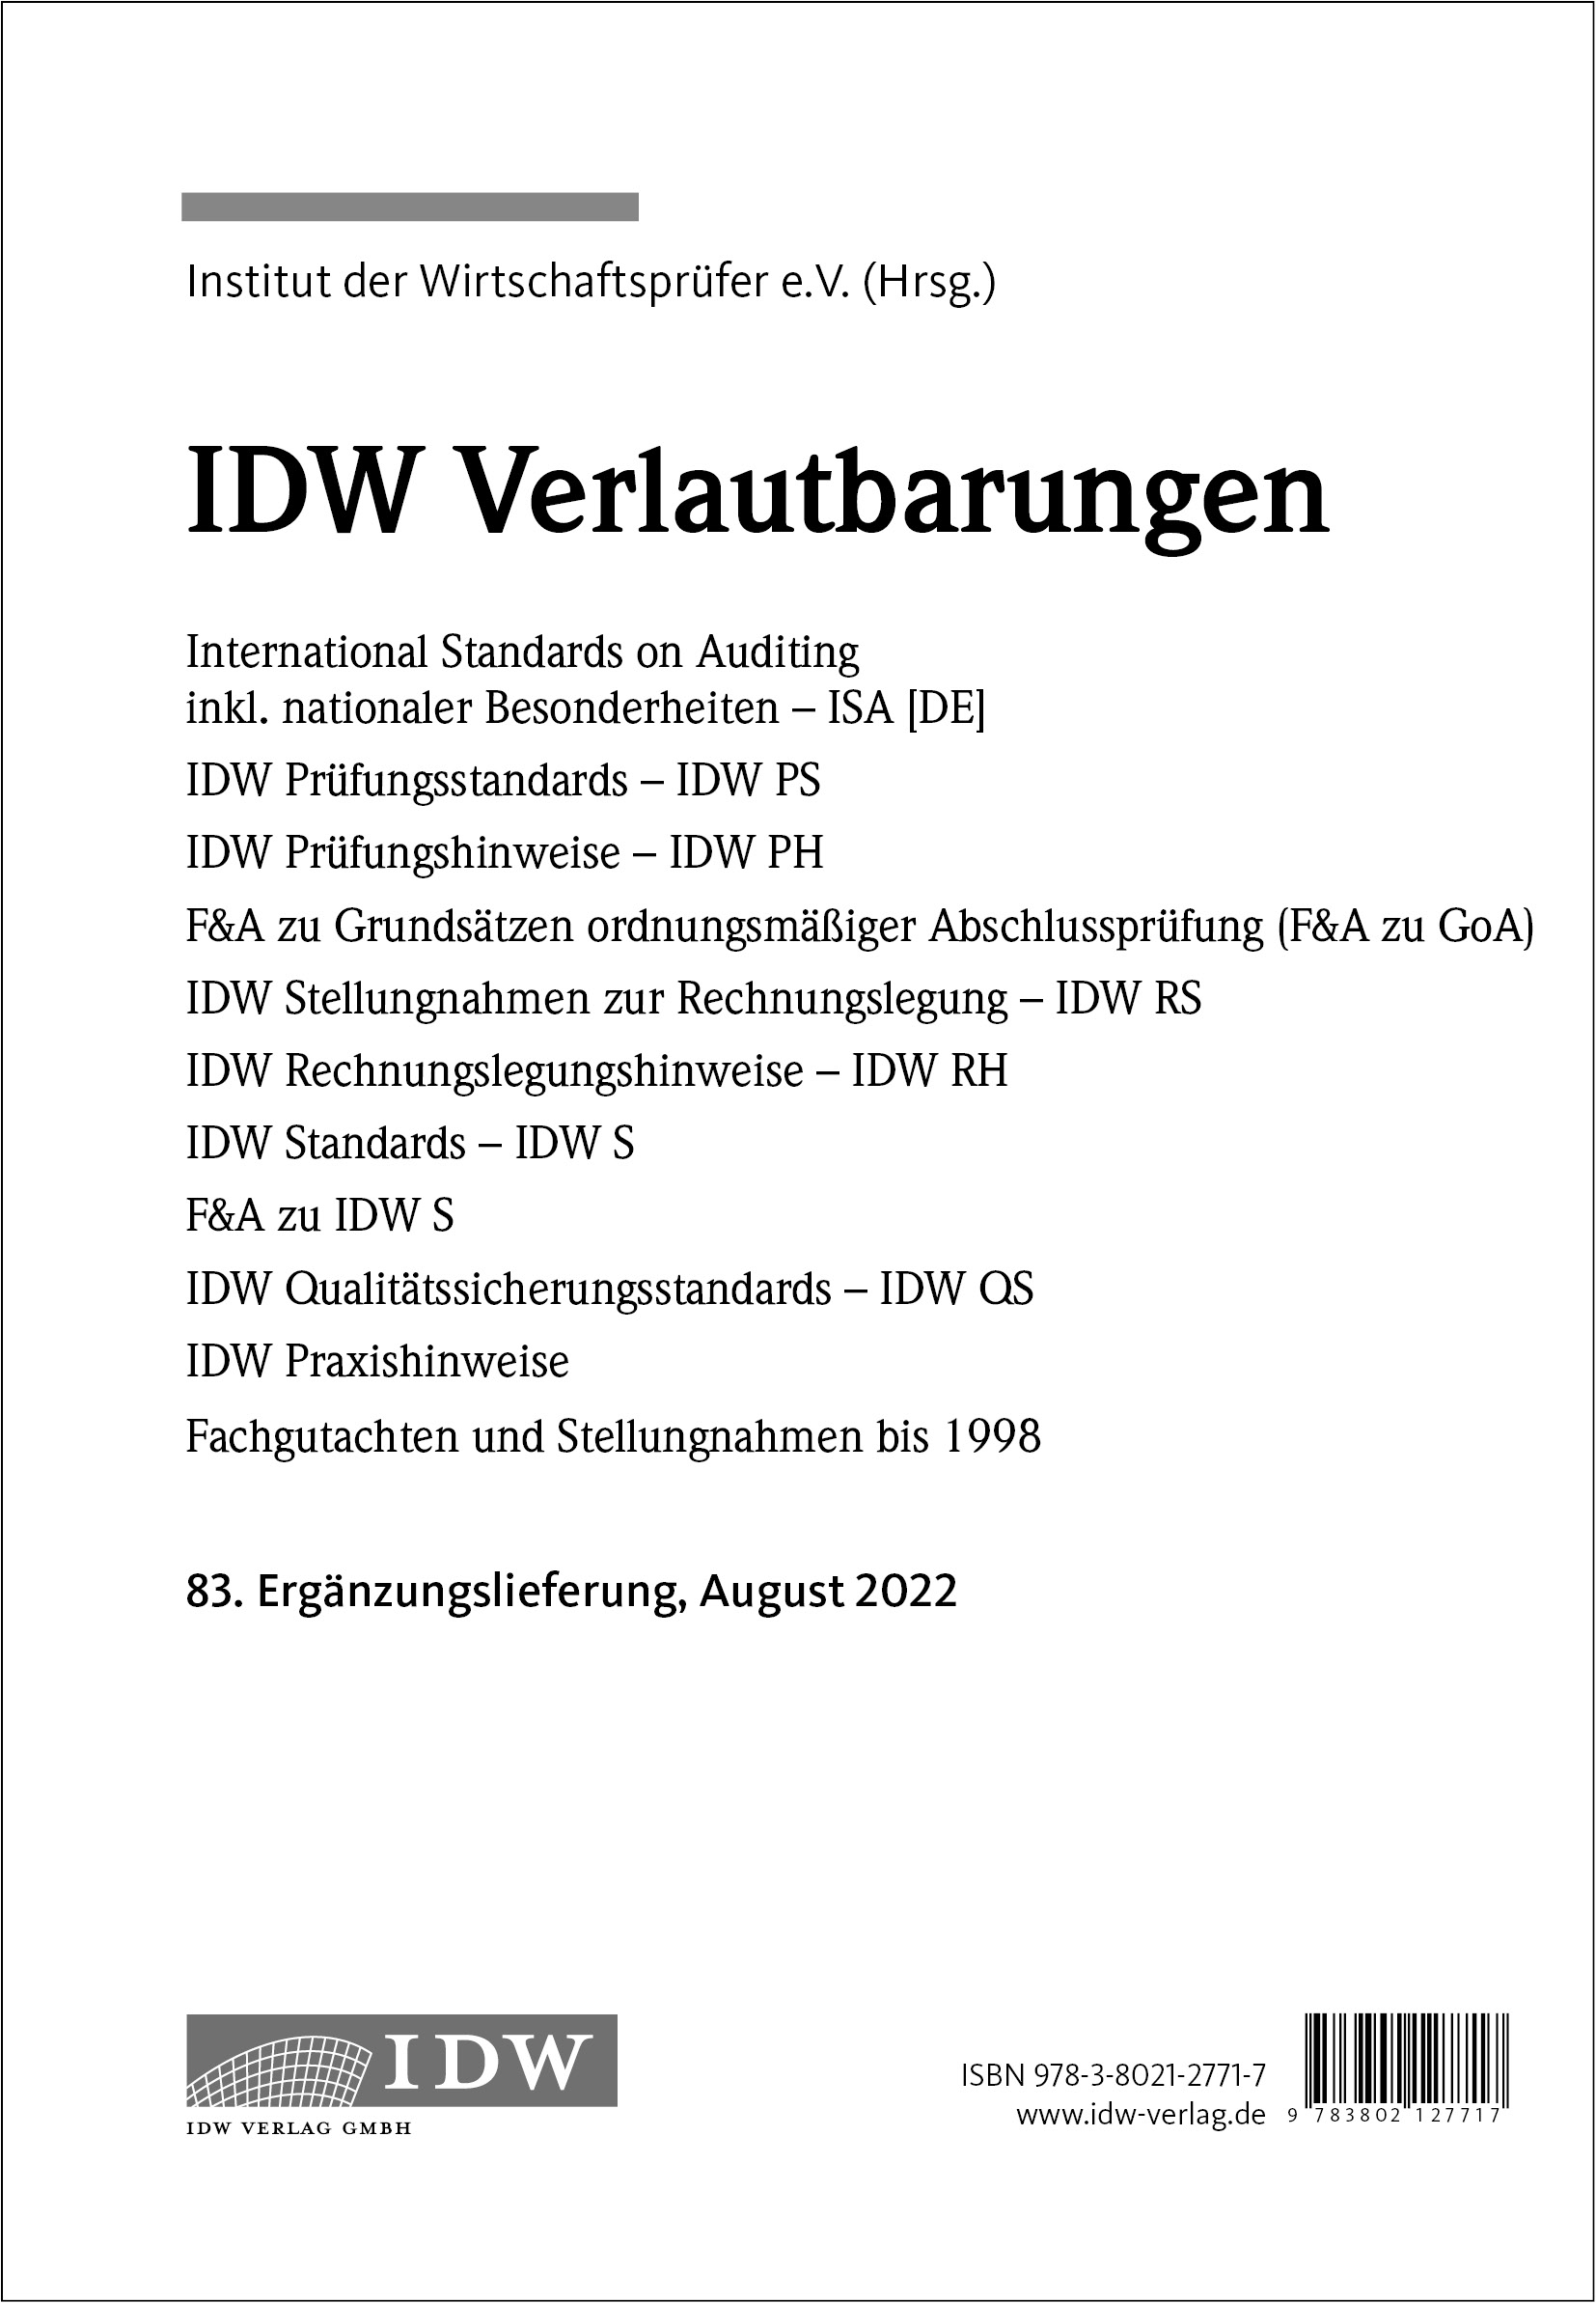 IDW Verlautbarungen - 83. Ergänzungslieferung 